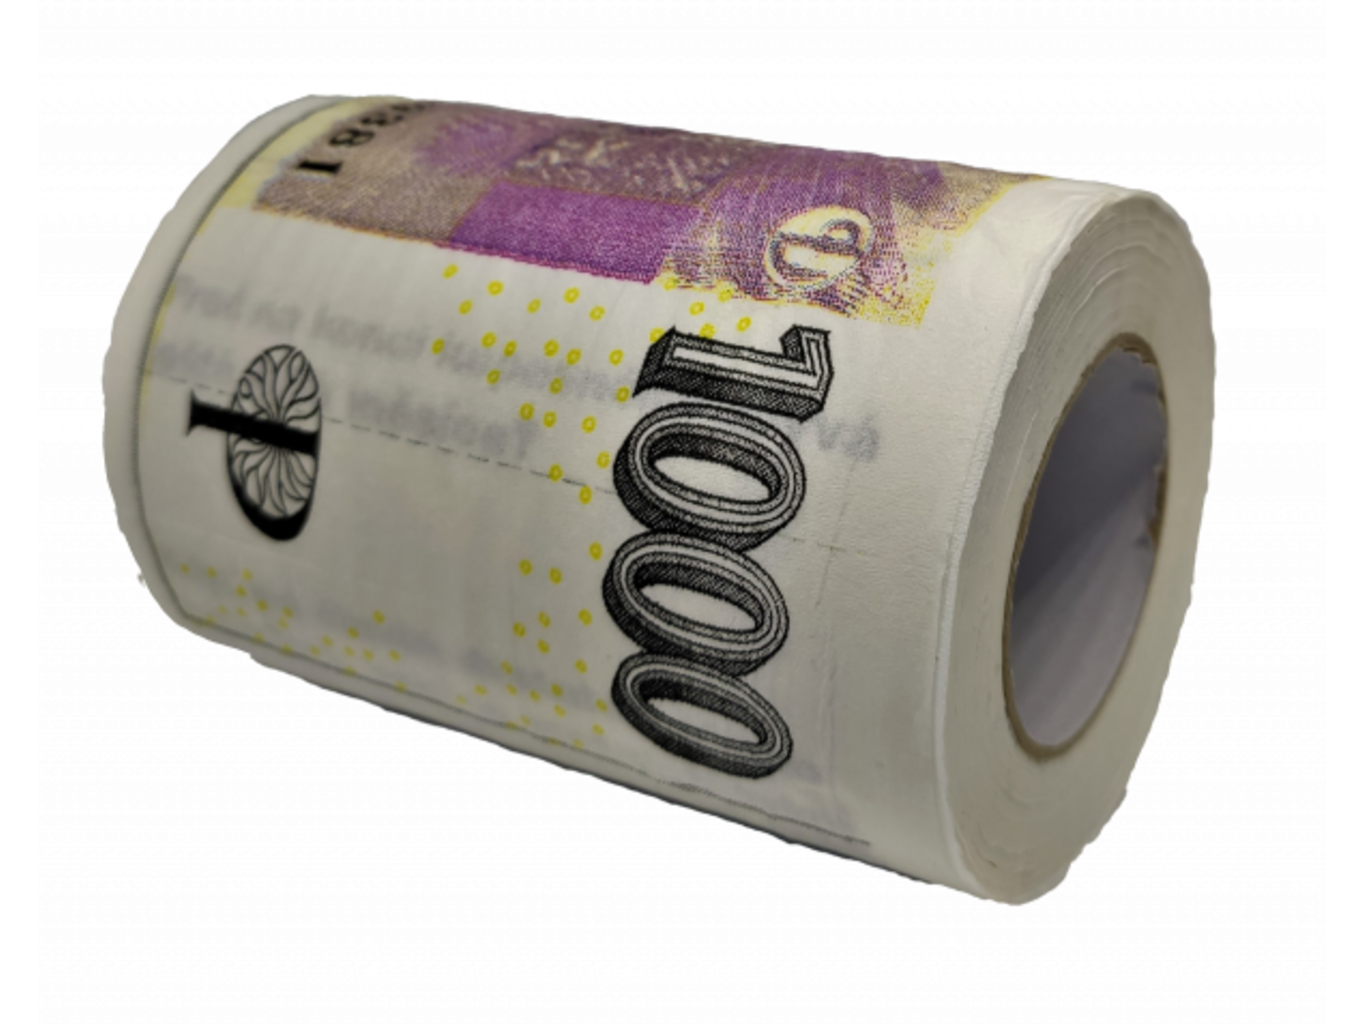 Toaletní papír - tisícovka 1000 Kč